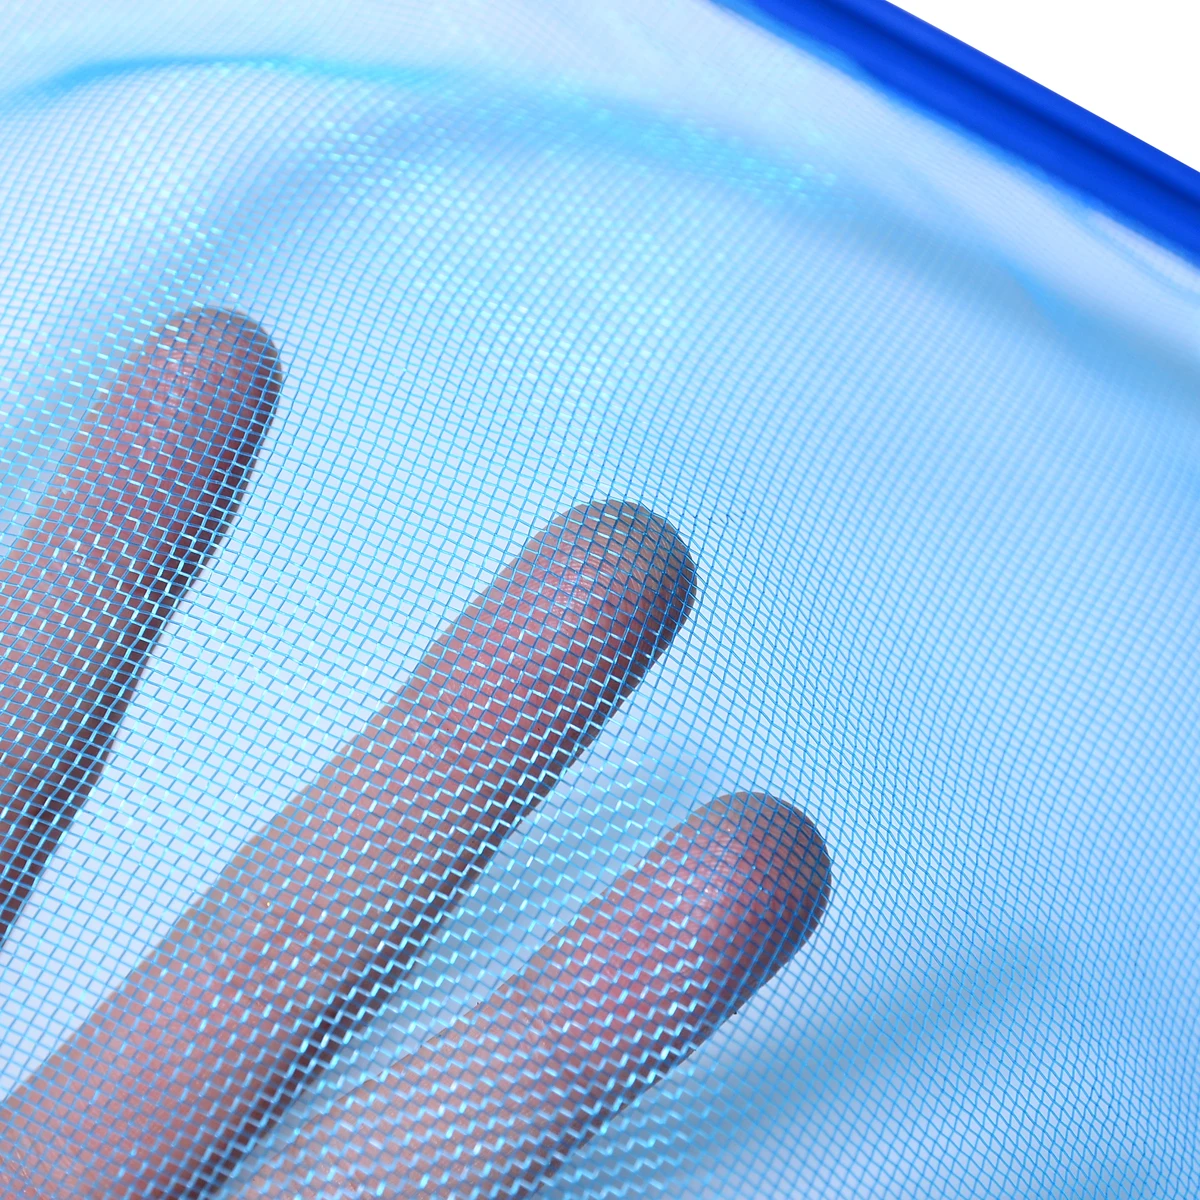 1 шт. синий плавательный бассейн сетка Алюминий+ пластик лист грабли Сетки Скиммер+ 5 телескопическая секция полюс для СПА бассейны чистящие средства